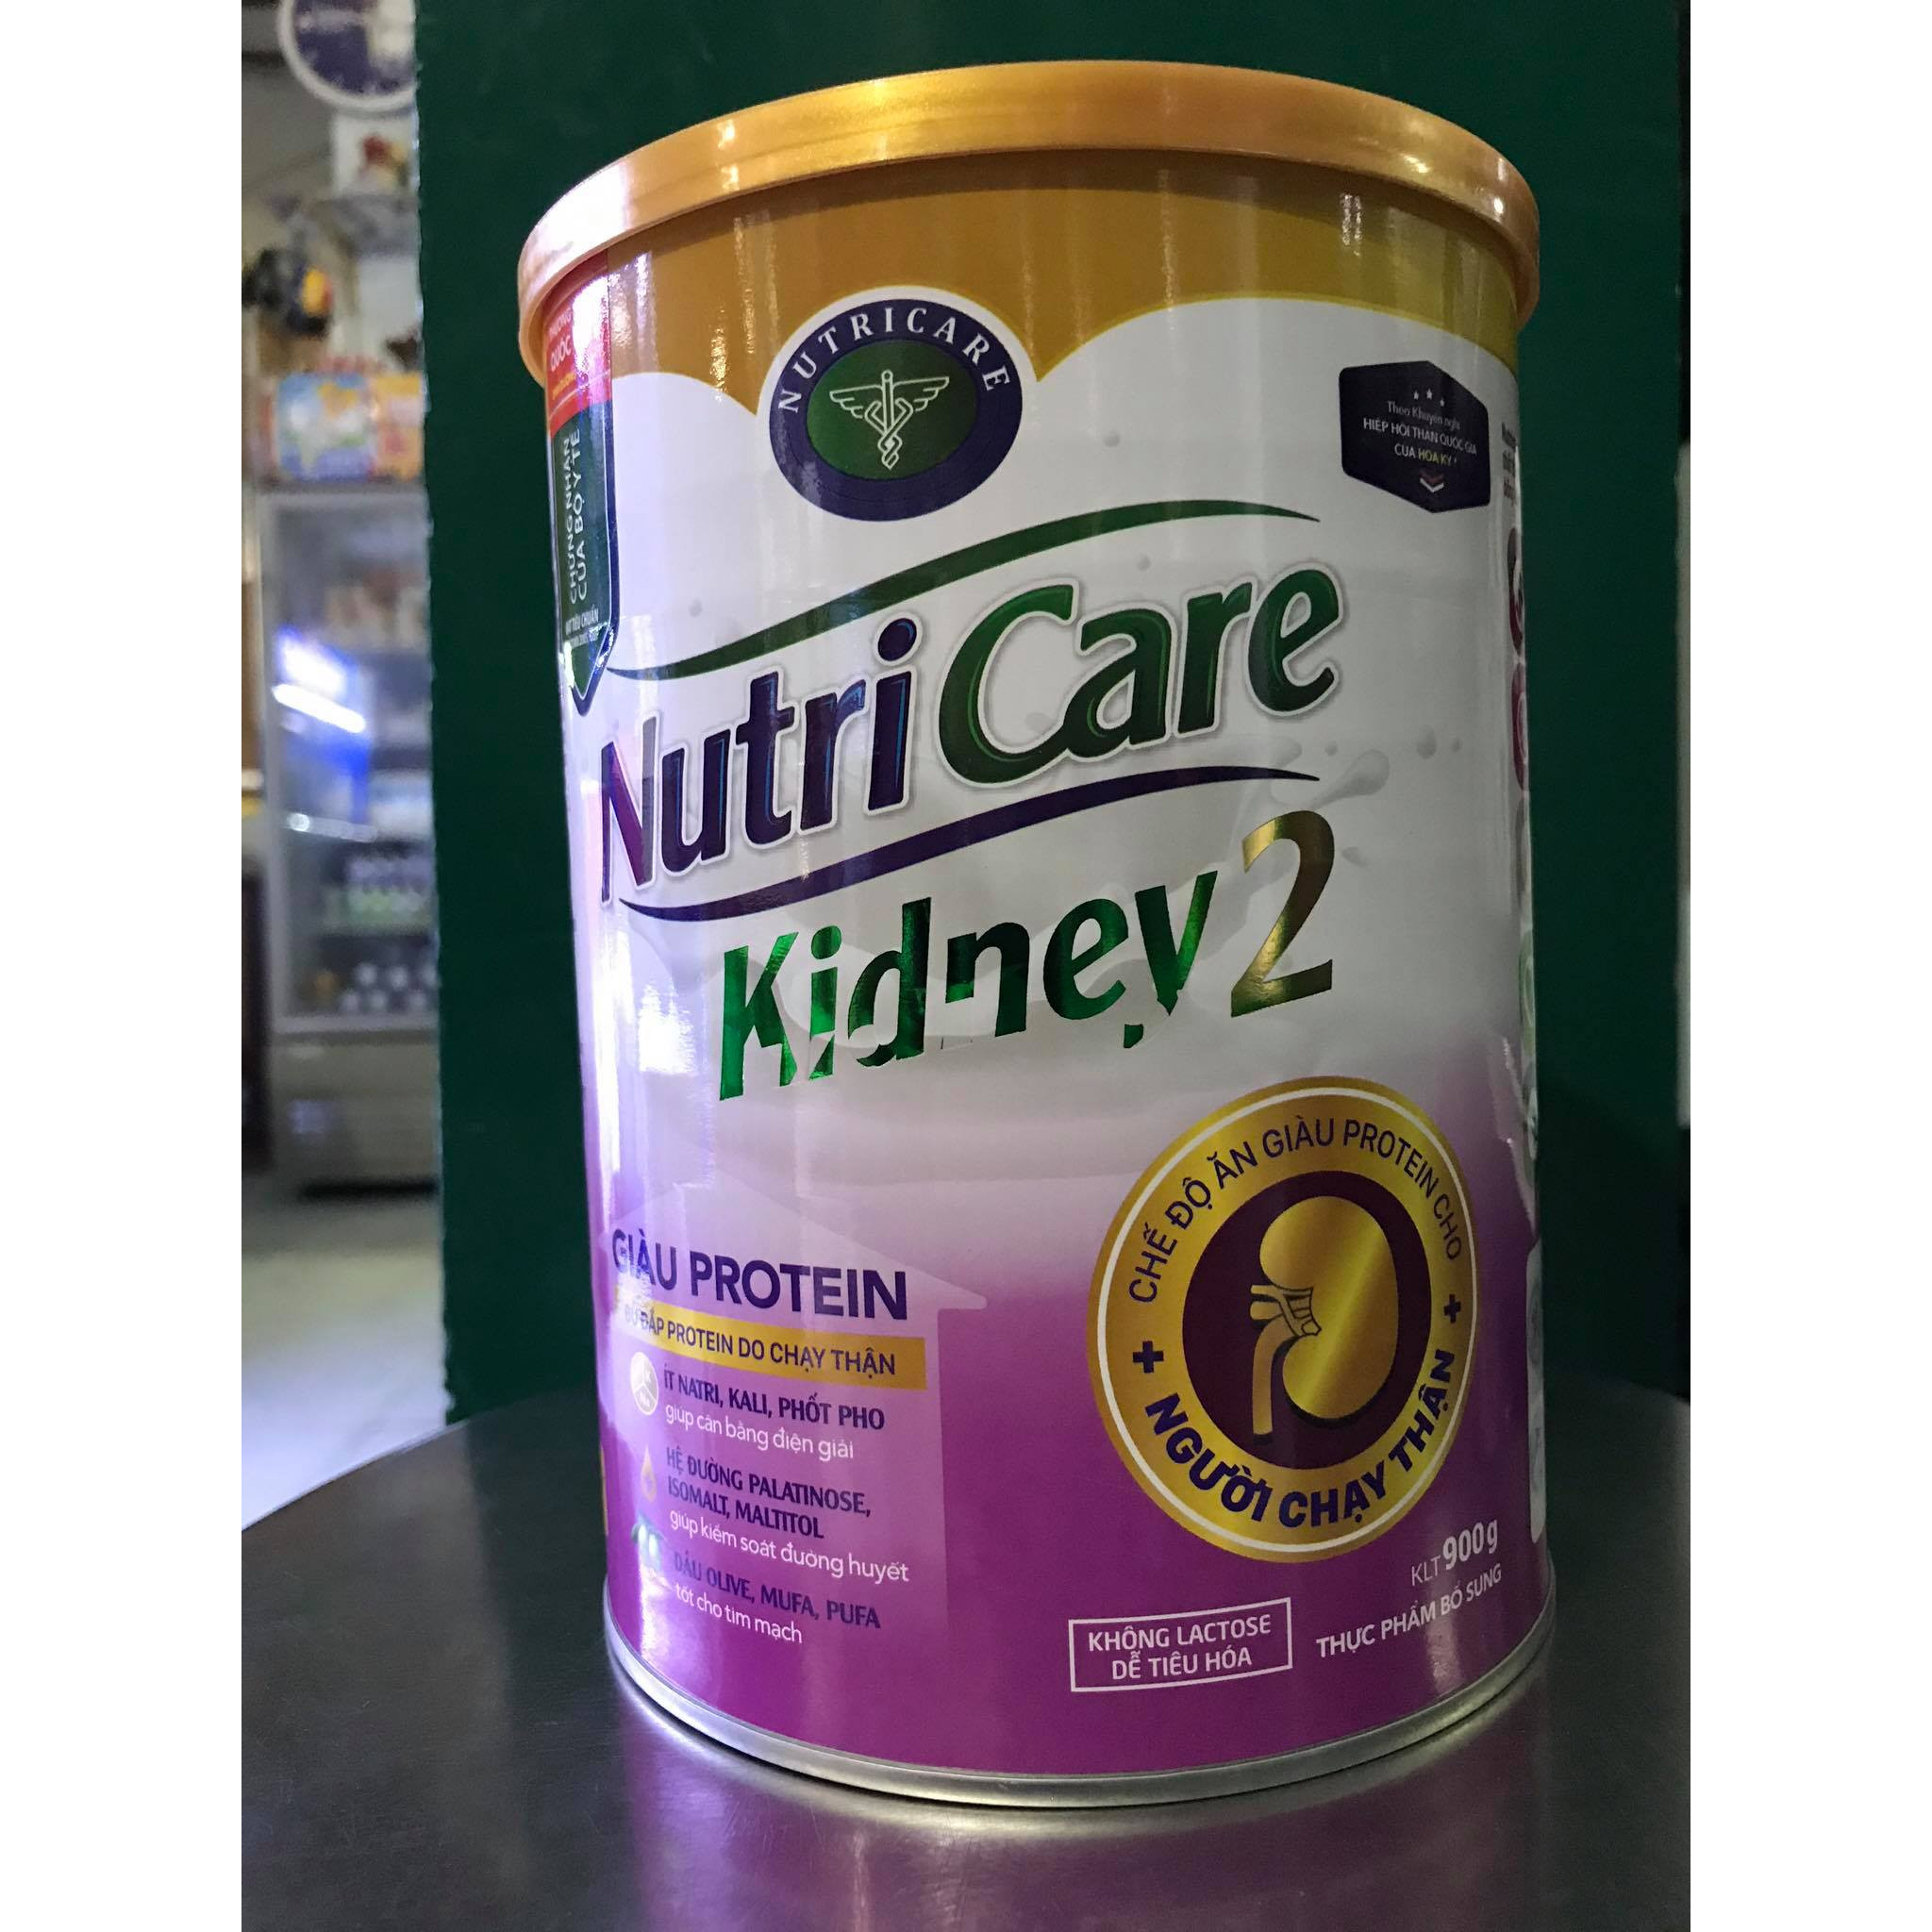 Sữa Kidney 2 900g của NutriCare - Chế độ ăn giàu Protein cho NGƯỜI CHẠY THẬN